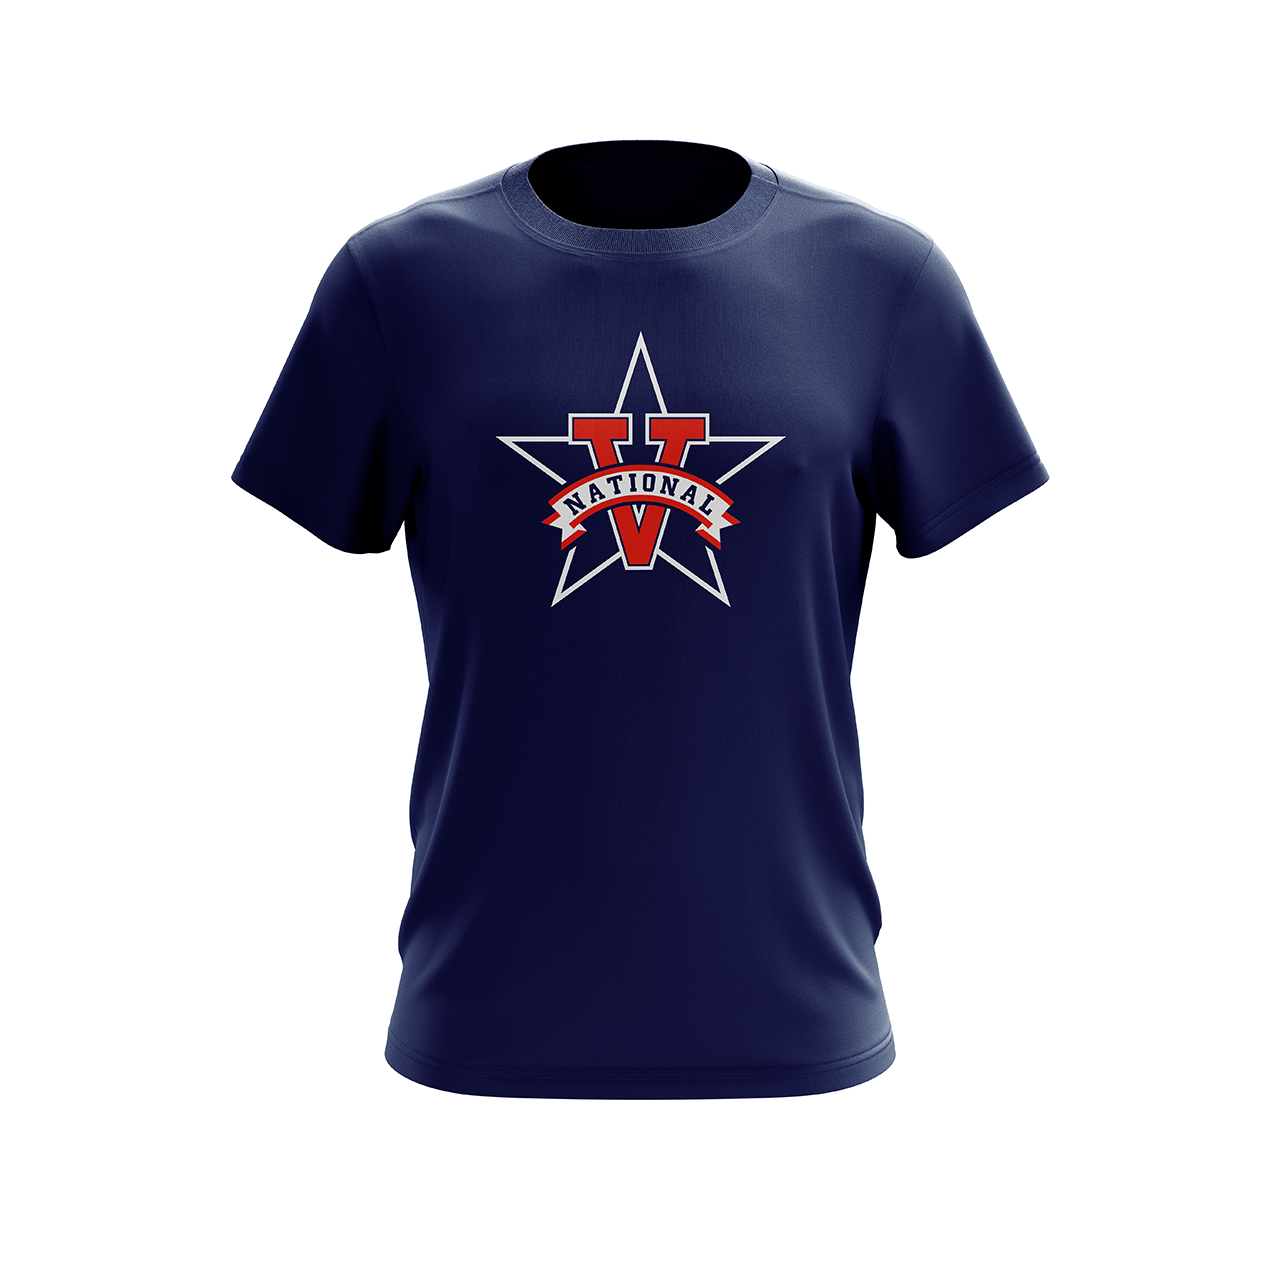 Unisex 100% Cotton Vista National Little League Team Spirit T-Shirt